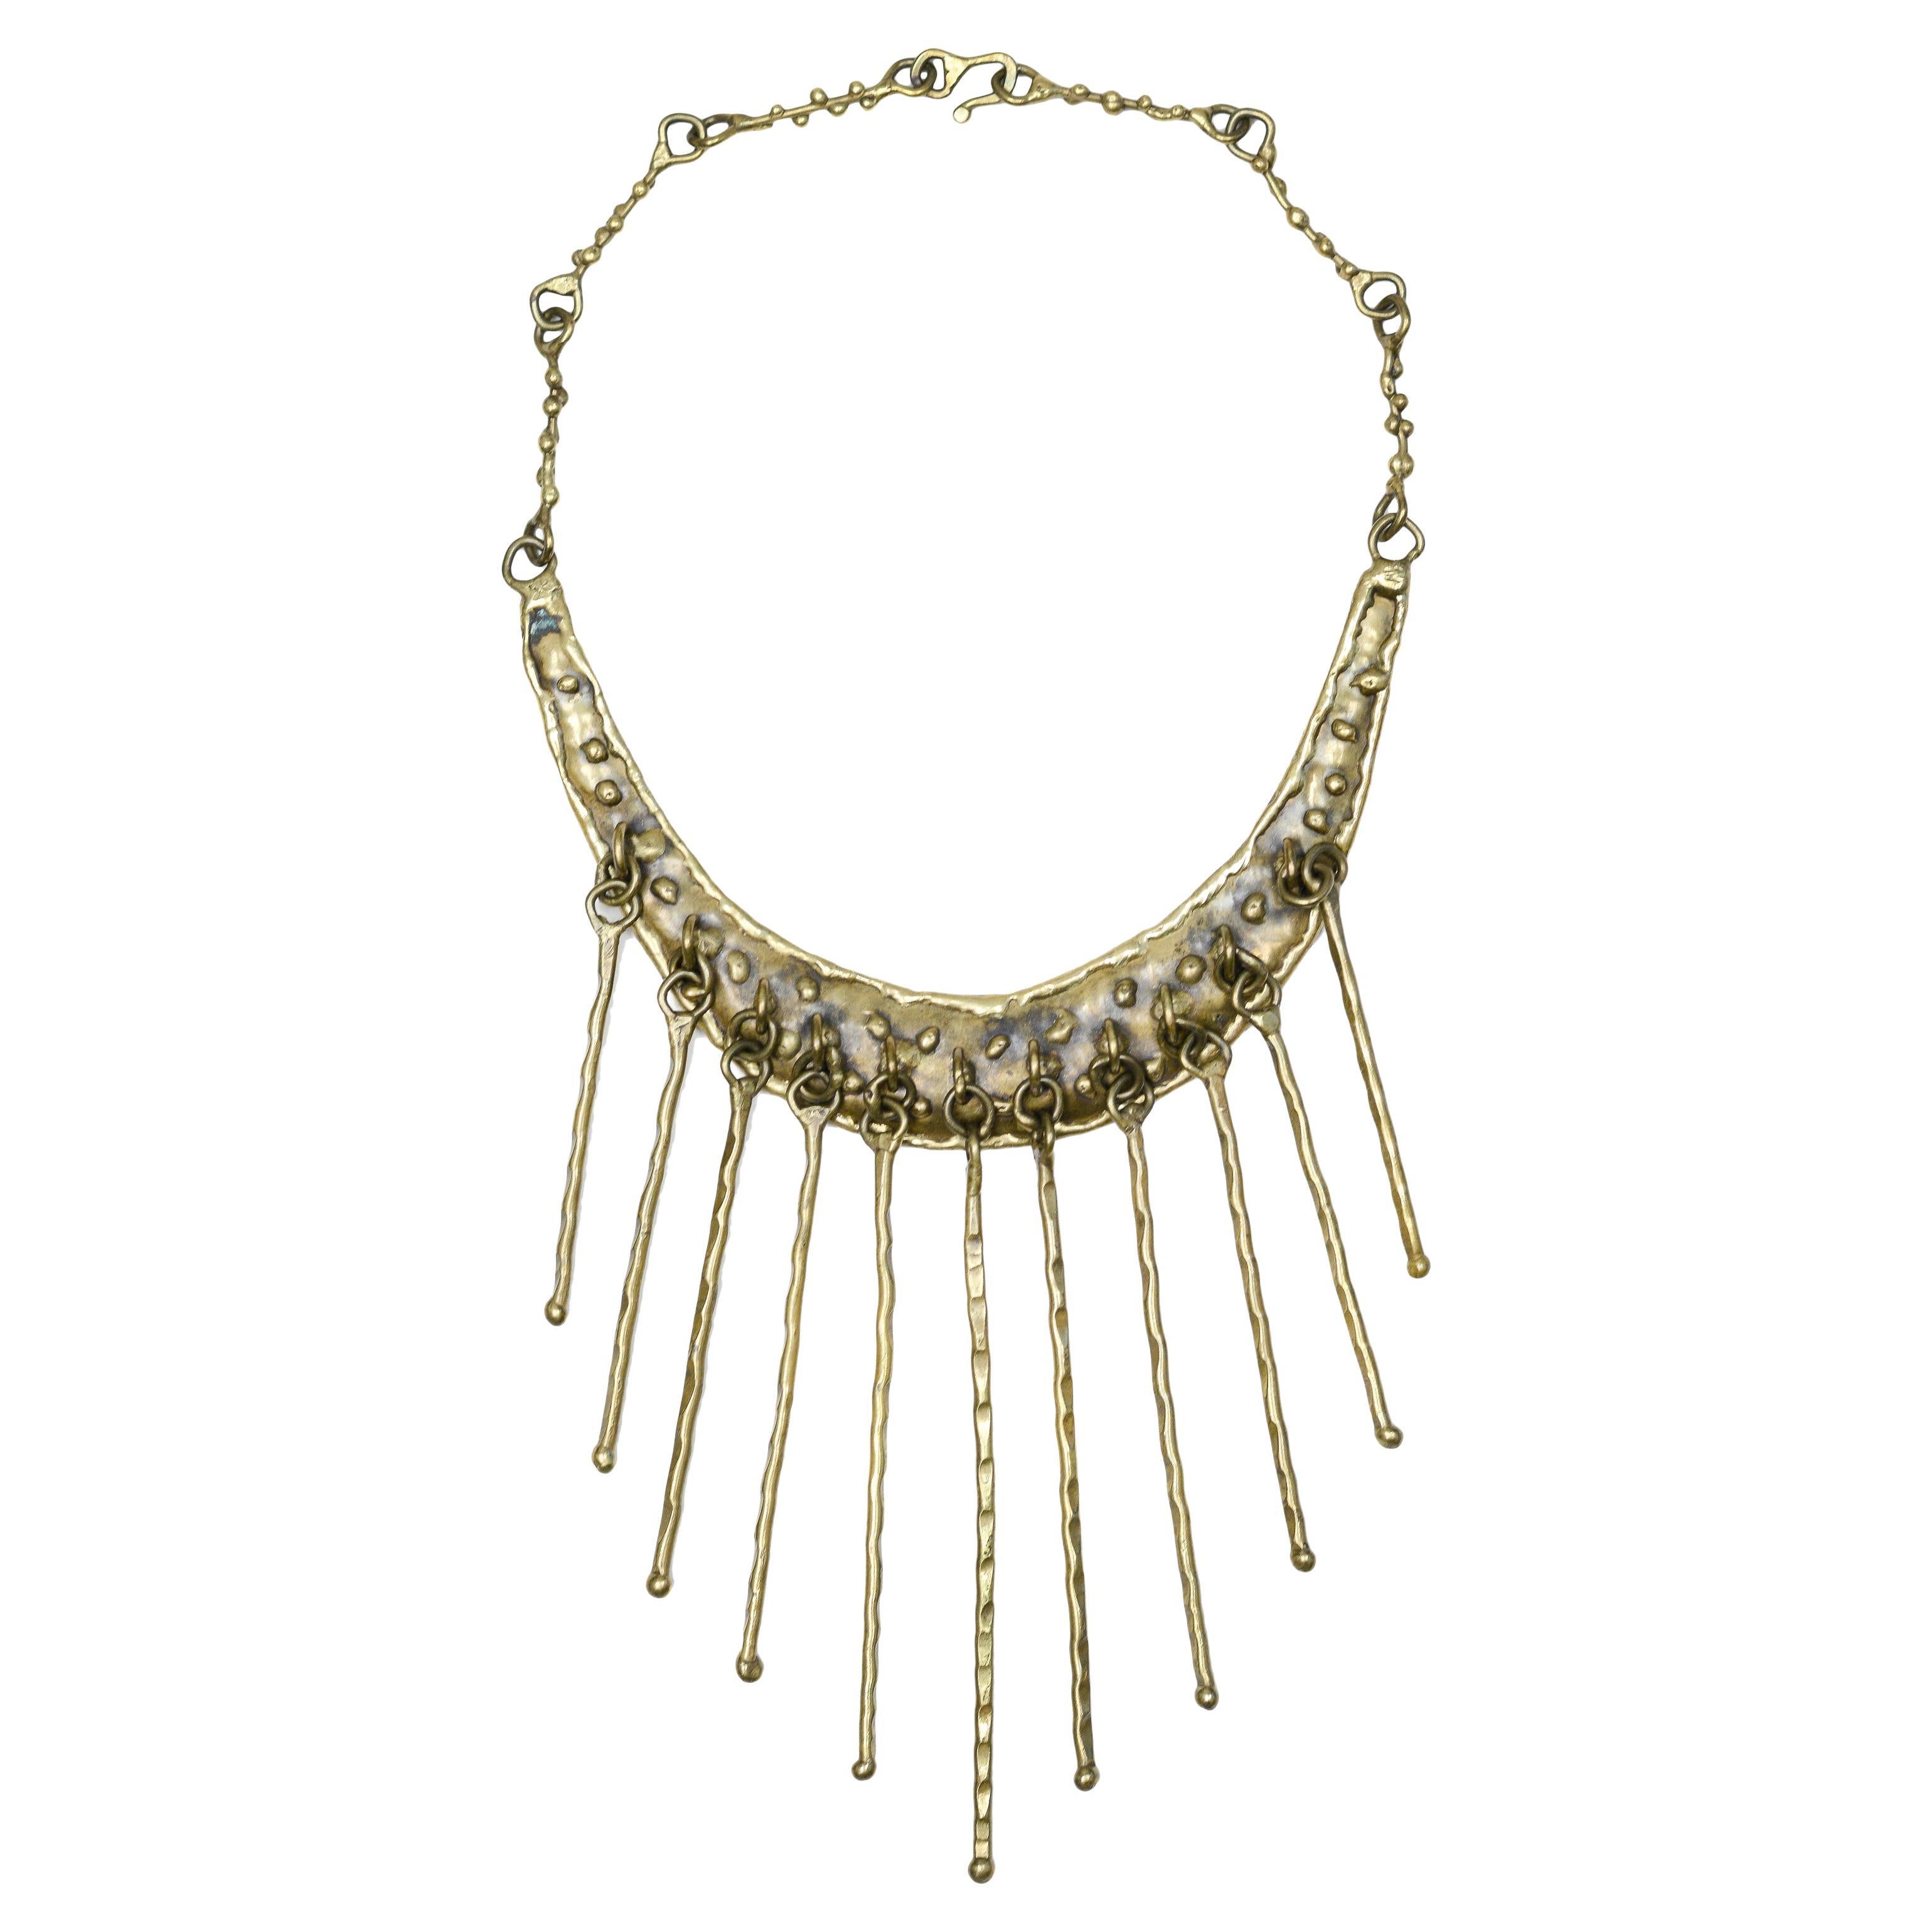 Pal Kepenyes Bronze Fringe Collar Necklace For Sale